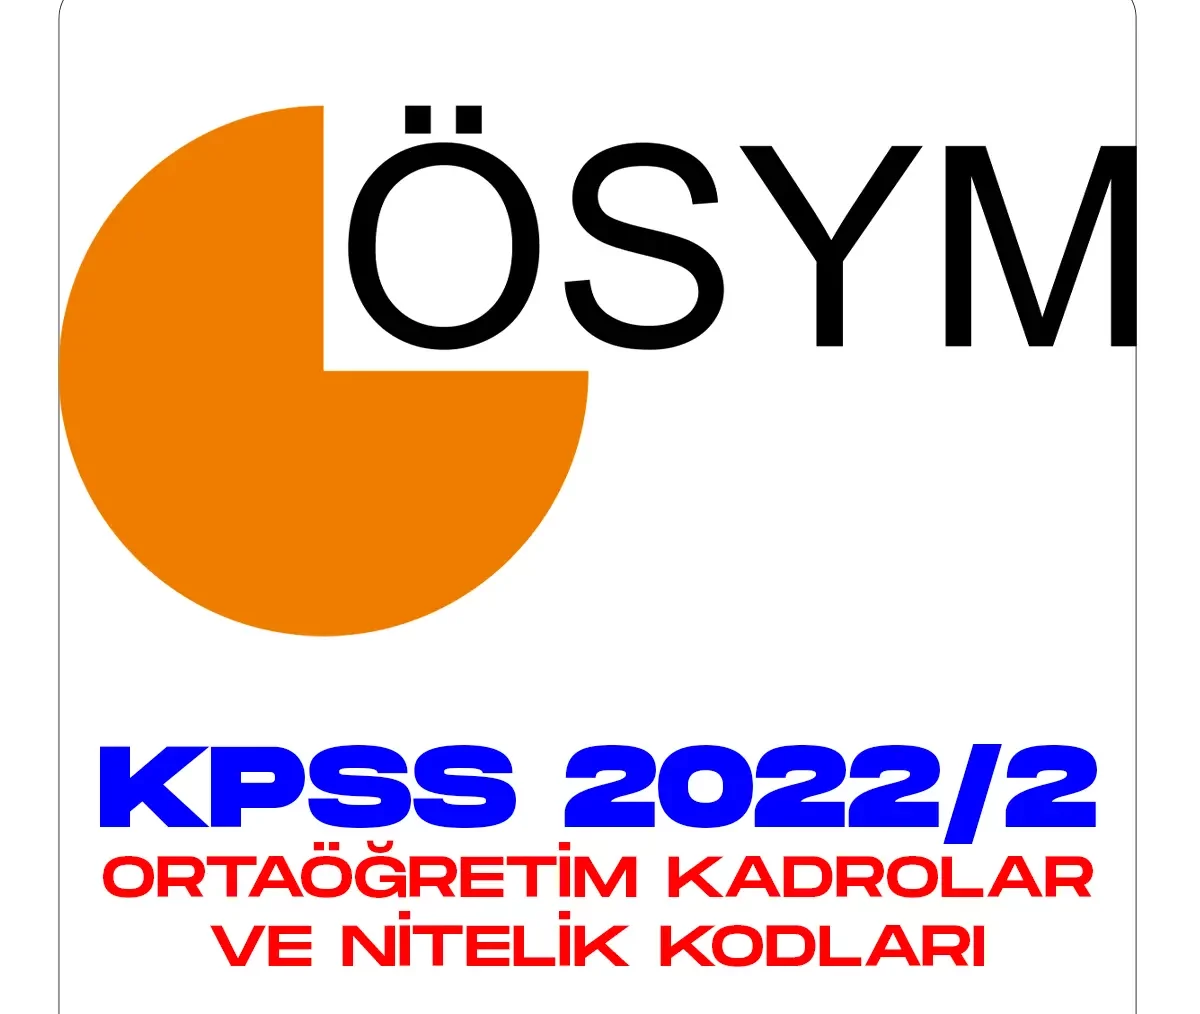 KPSS 2022/2 tercihlerinde ortaöğretim kadroları ve nitelik kodları.